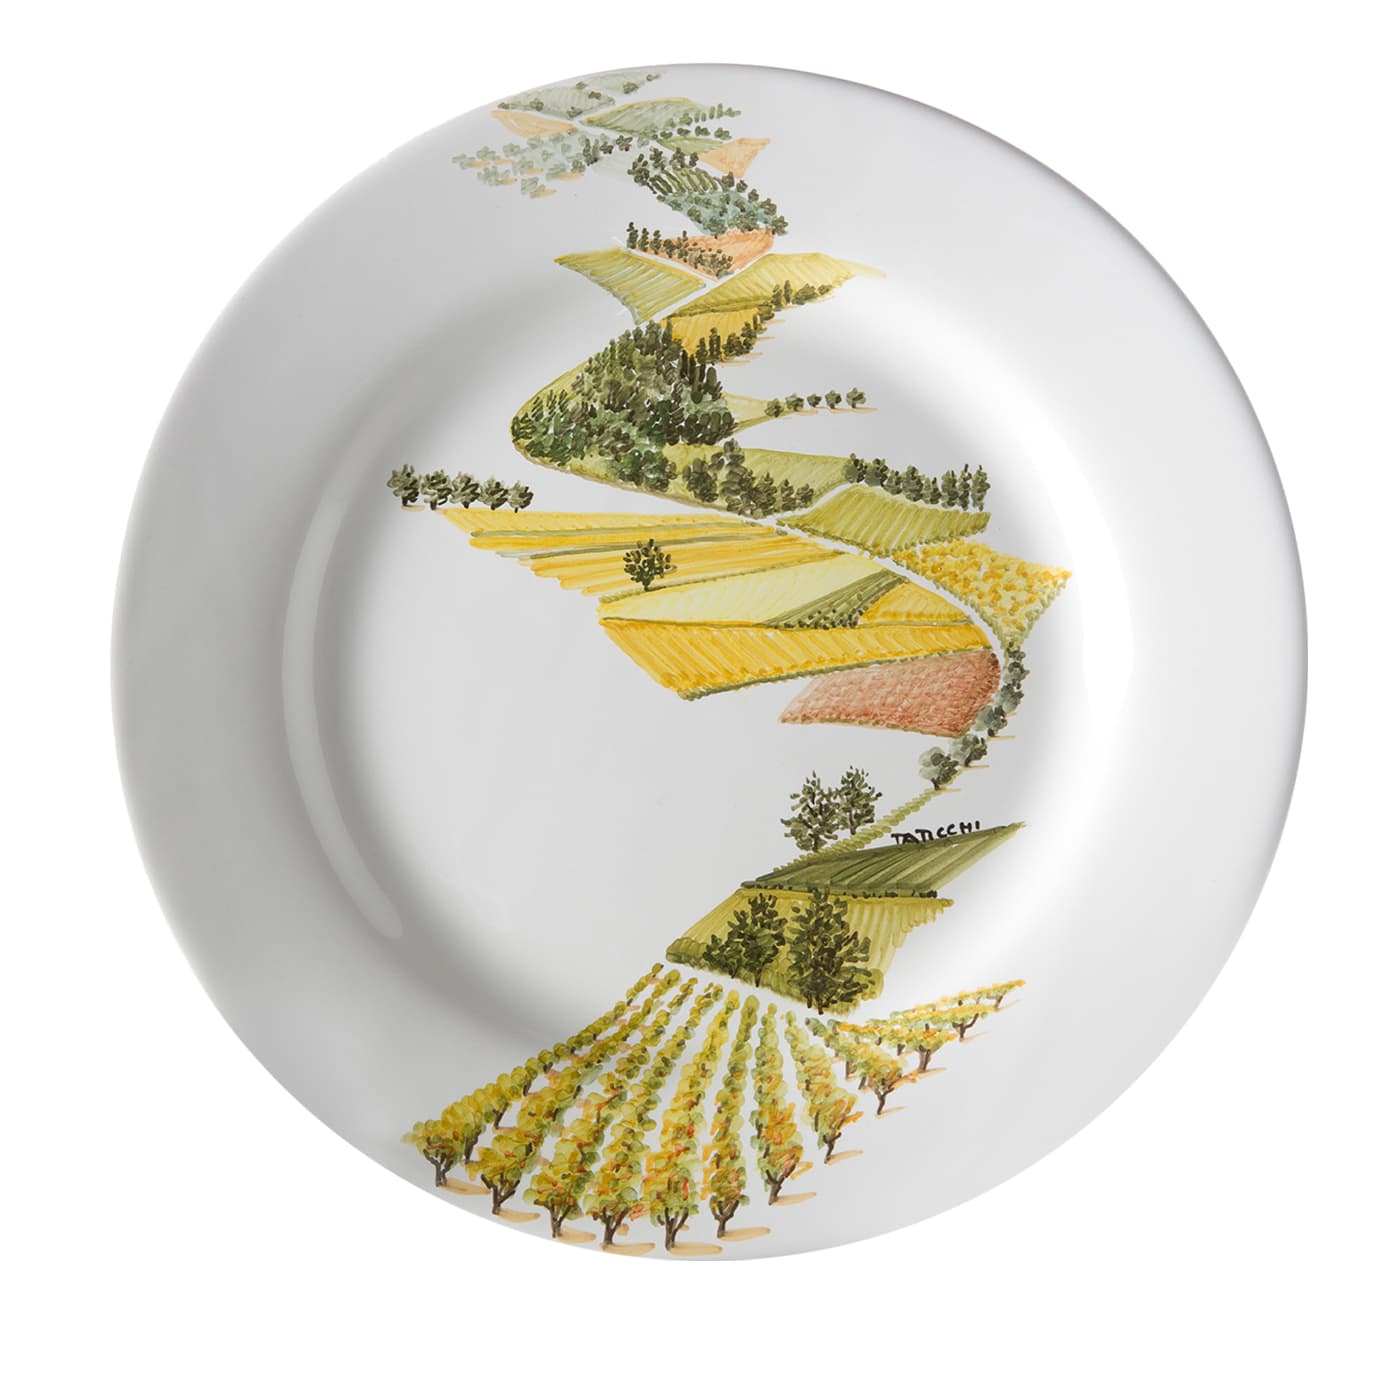 Visioni Dinner Plate by Maria Antonietta Taticchi - Materia Ceramica